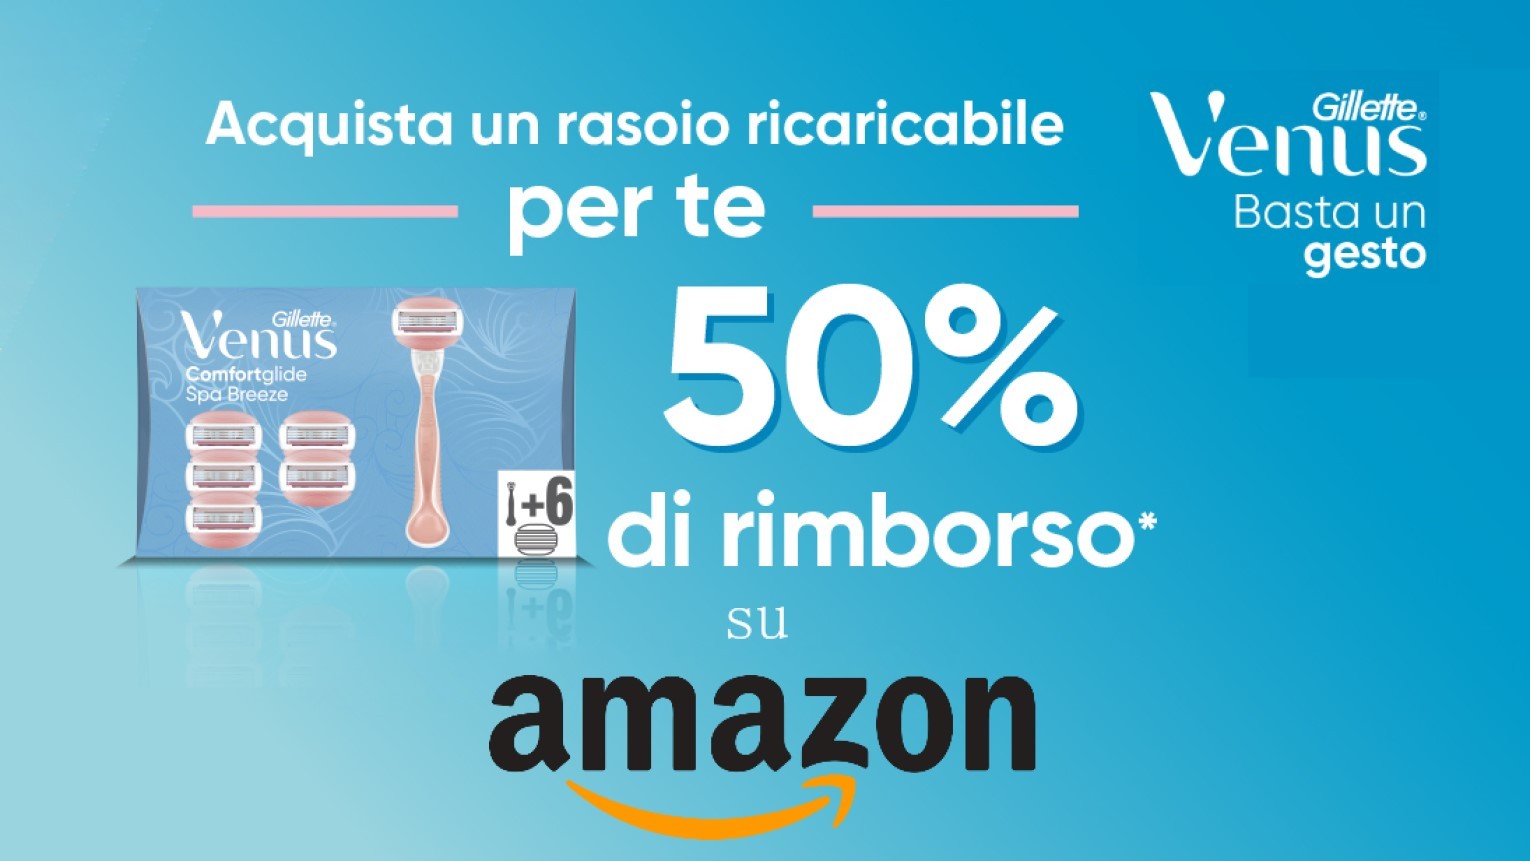 Cashback Gillette Venus su Amazon: ricevi il rimborso del 50%